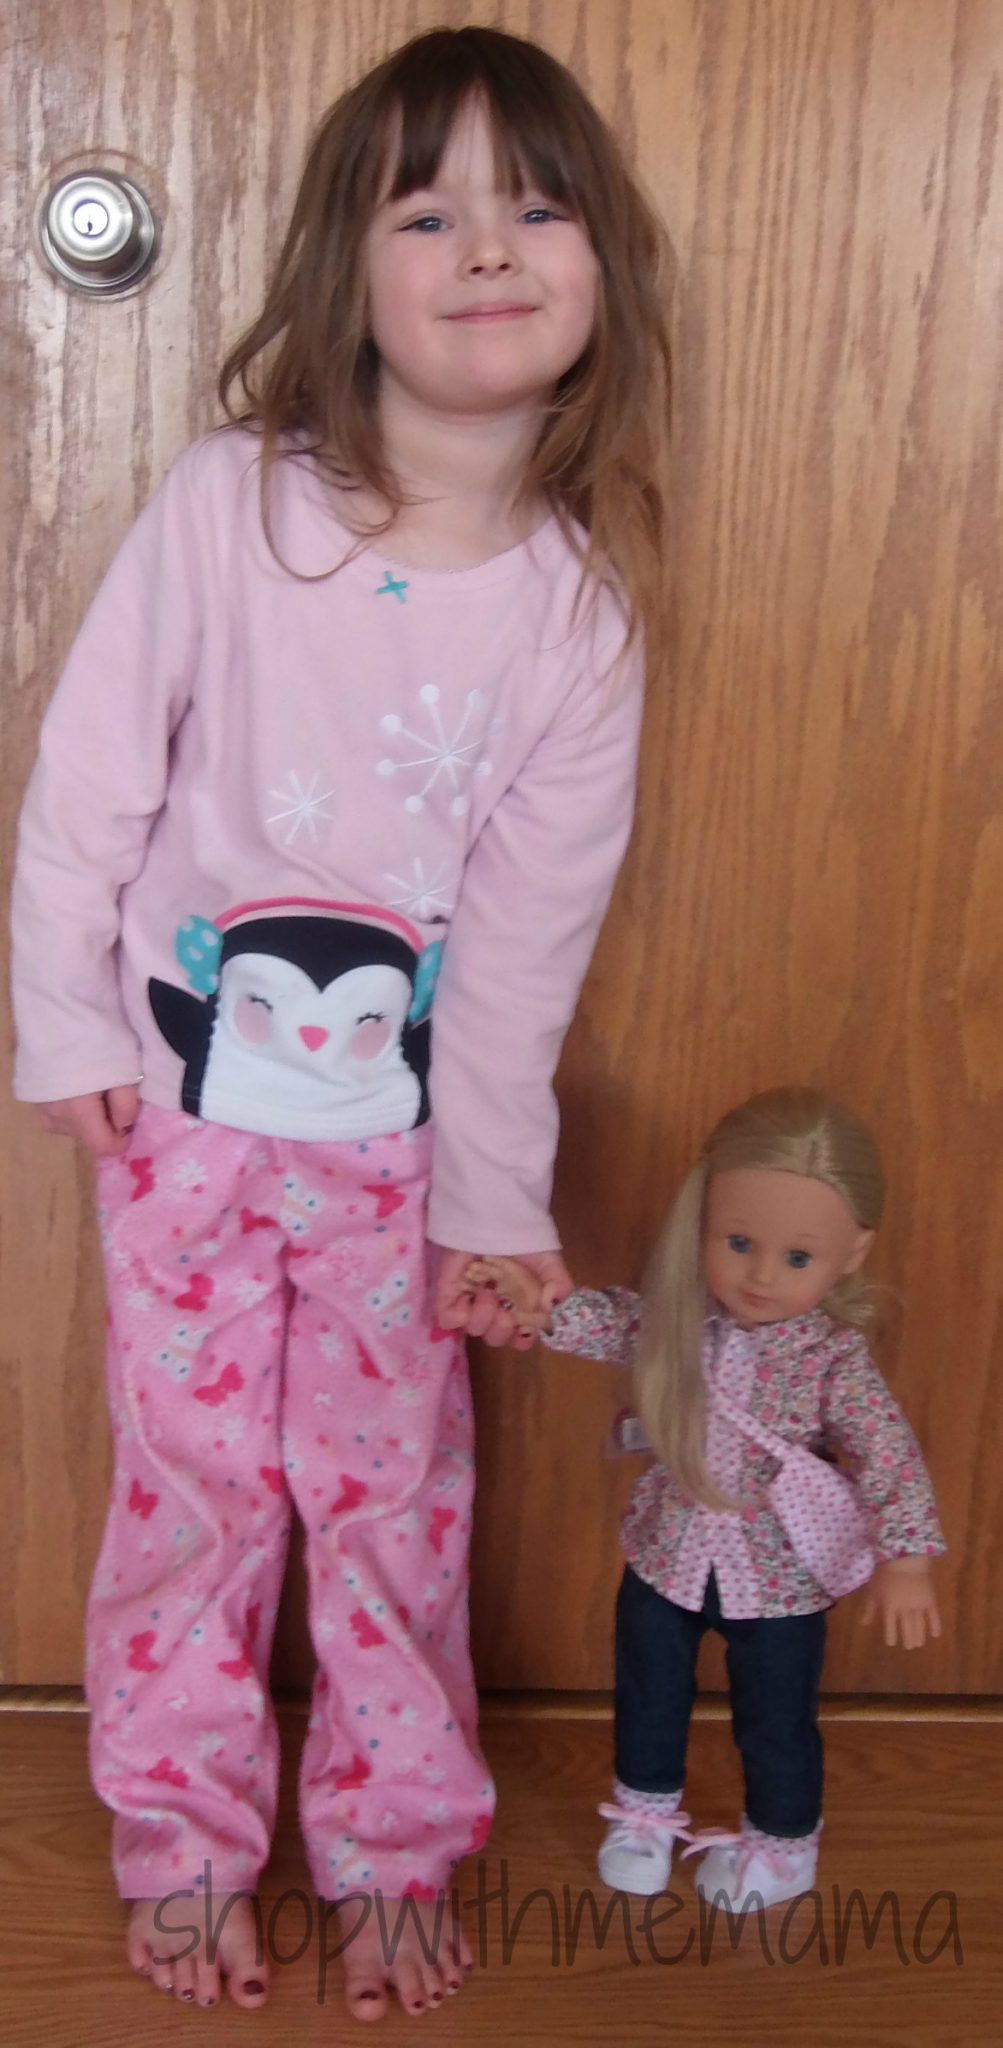 Popular Dolls For Little Girls